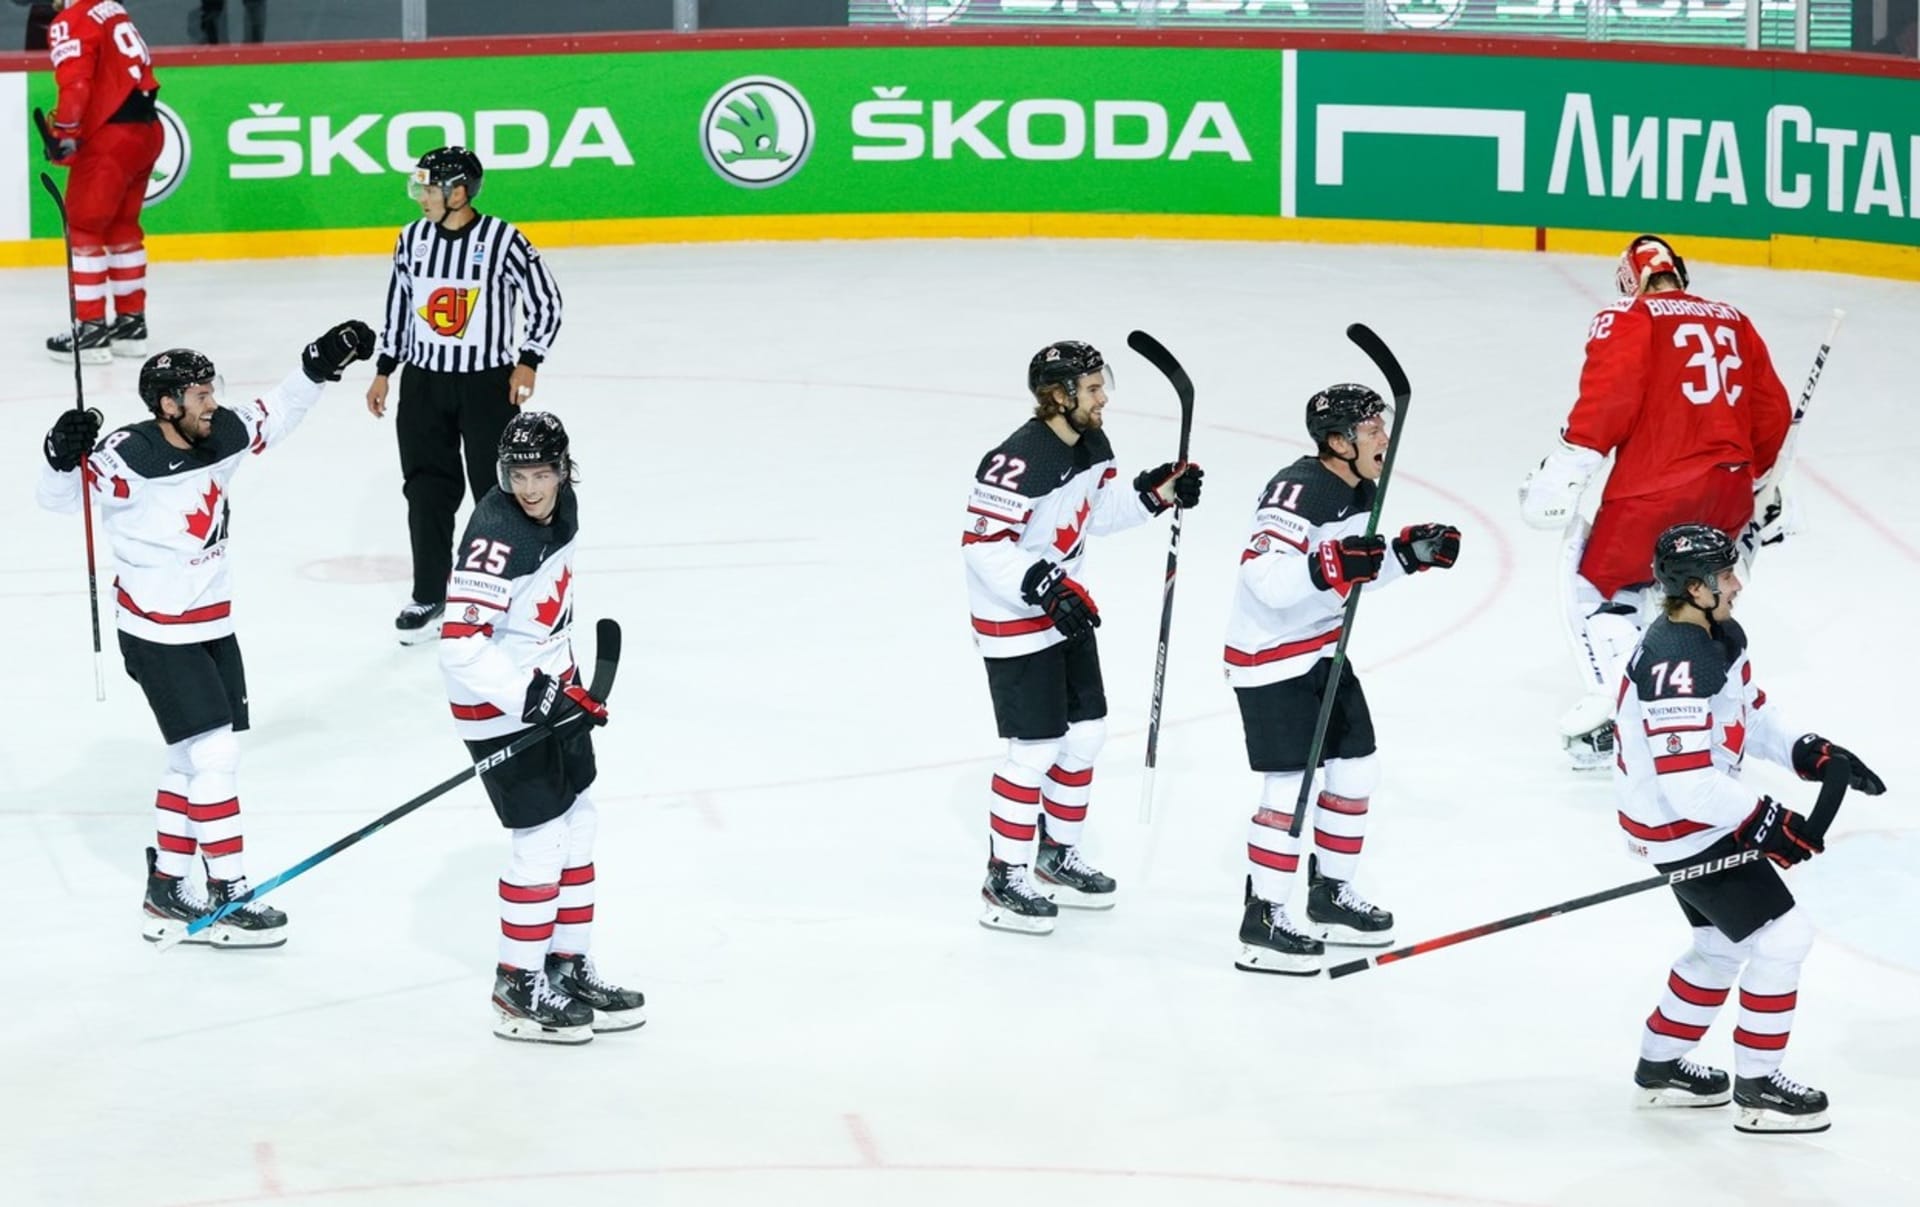 Kanaďané překvapili. Ve čtvrtfinále hokejového šampionátu porazili Rusko v prodloužení.